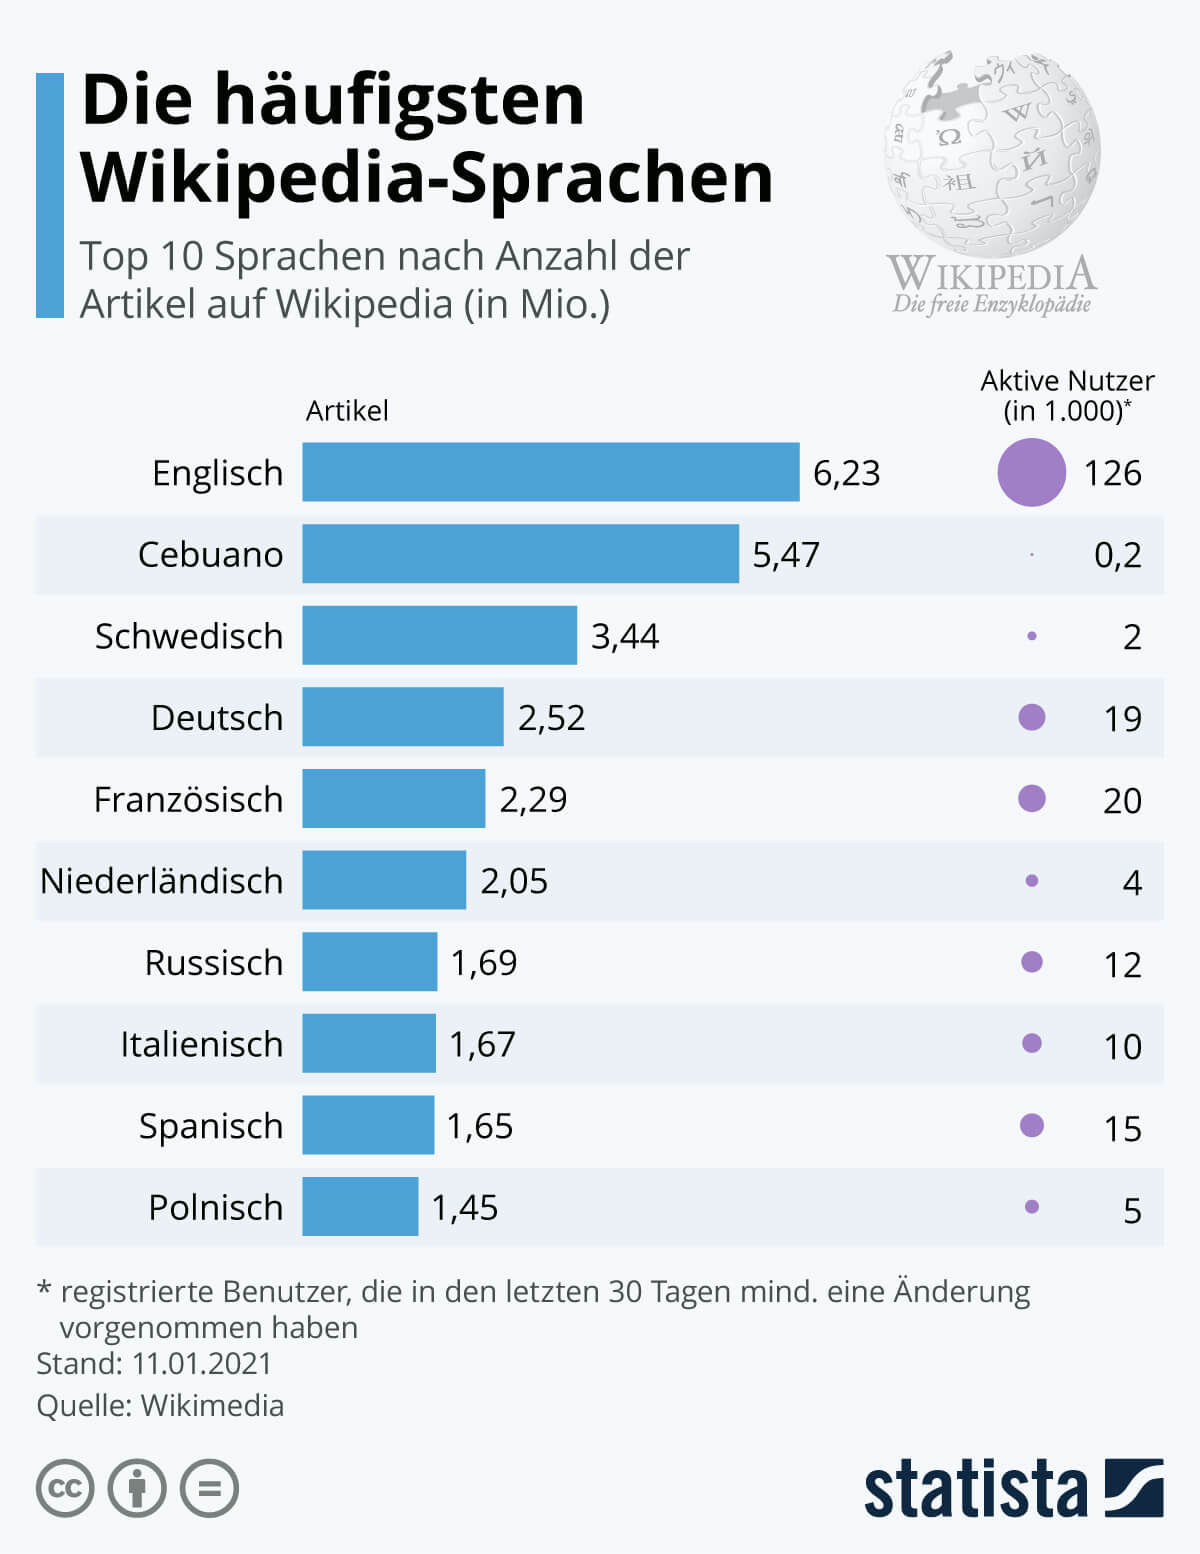 Die häufigsten Sprachen auf Wikipedia